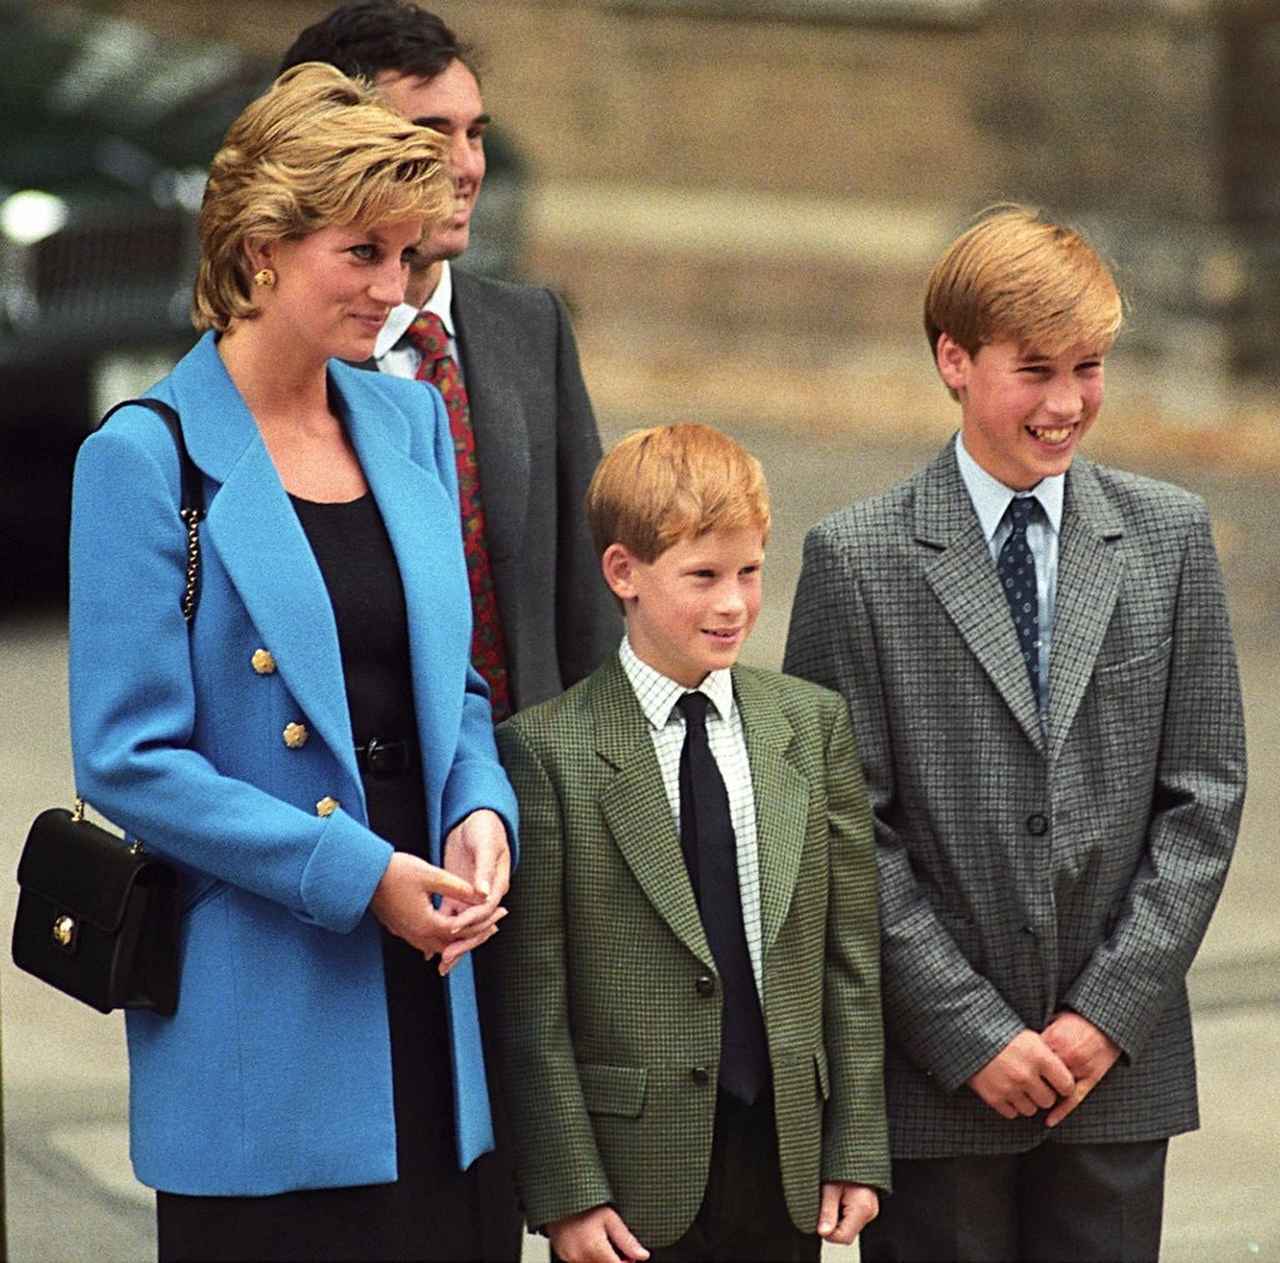 1995年、ウィリアム王子のイートン校へ初登校の写真